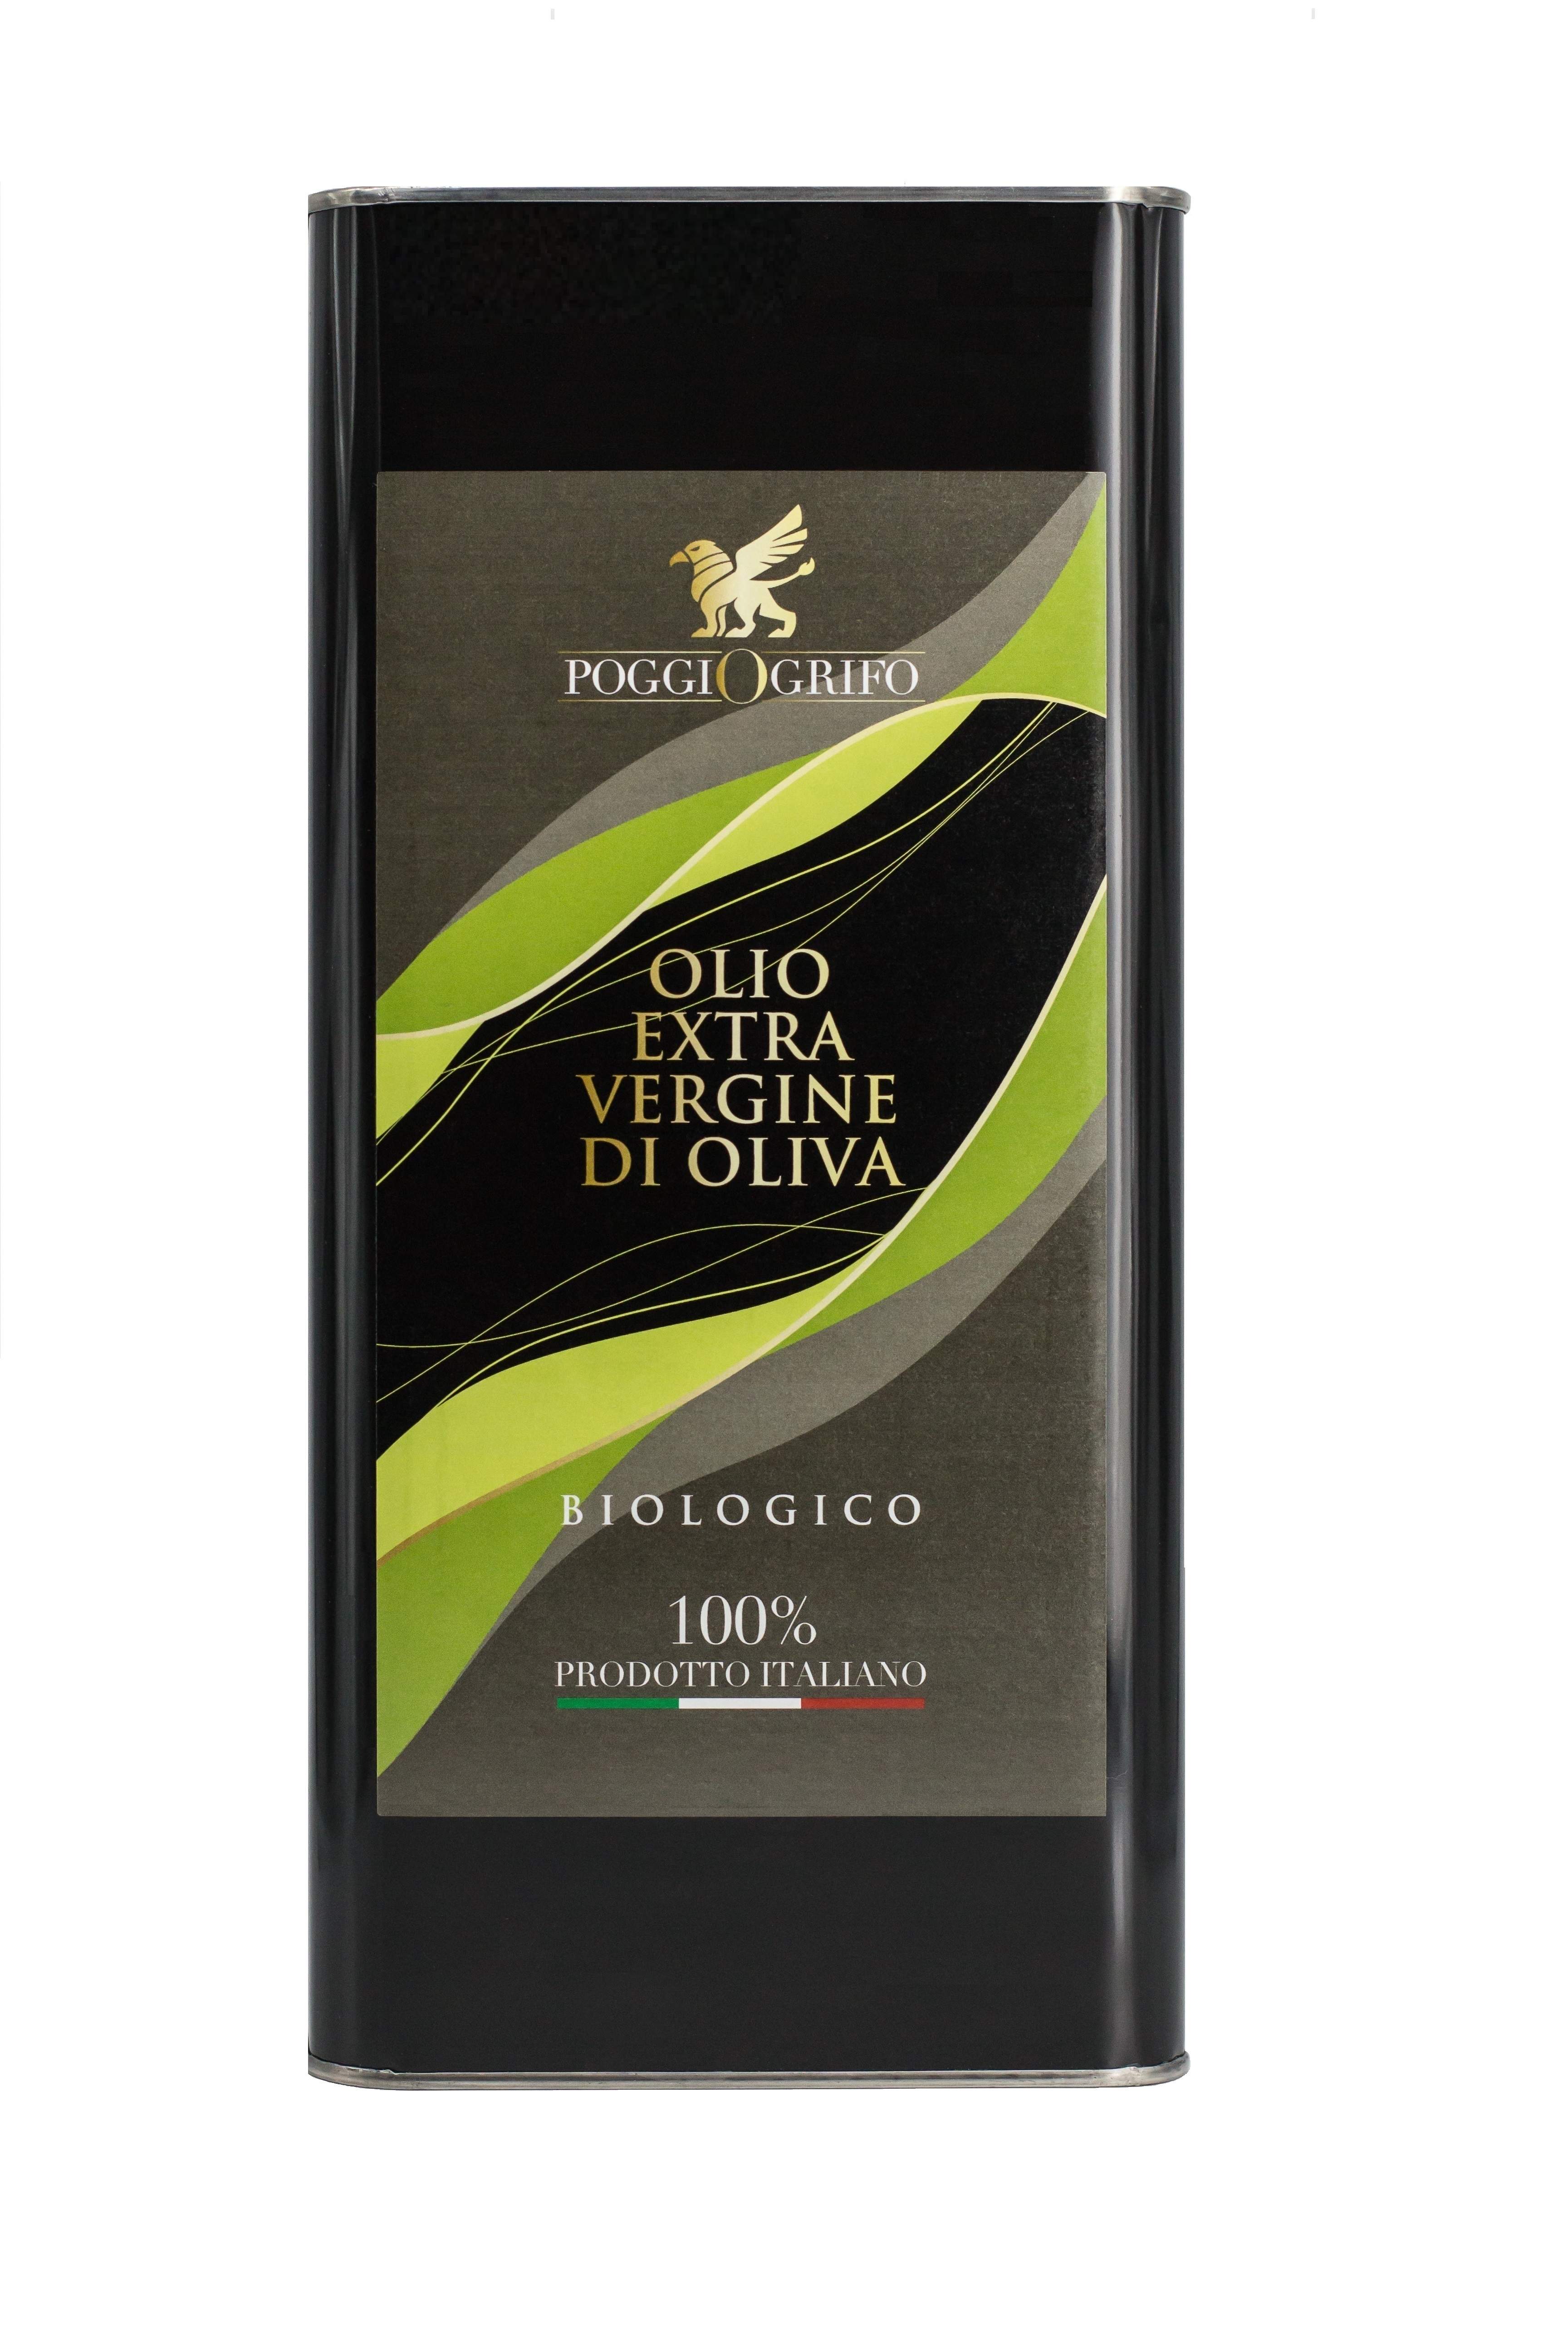 Olio extra vergine di oliva 100% ITALIANO "BIOLOGICO" Latta da 5 Litri